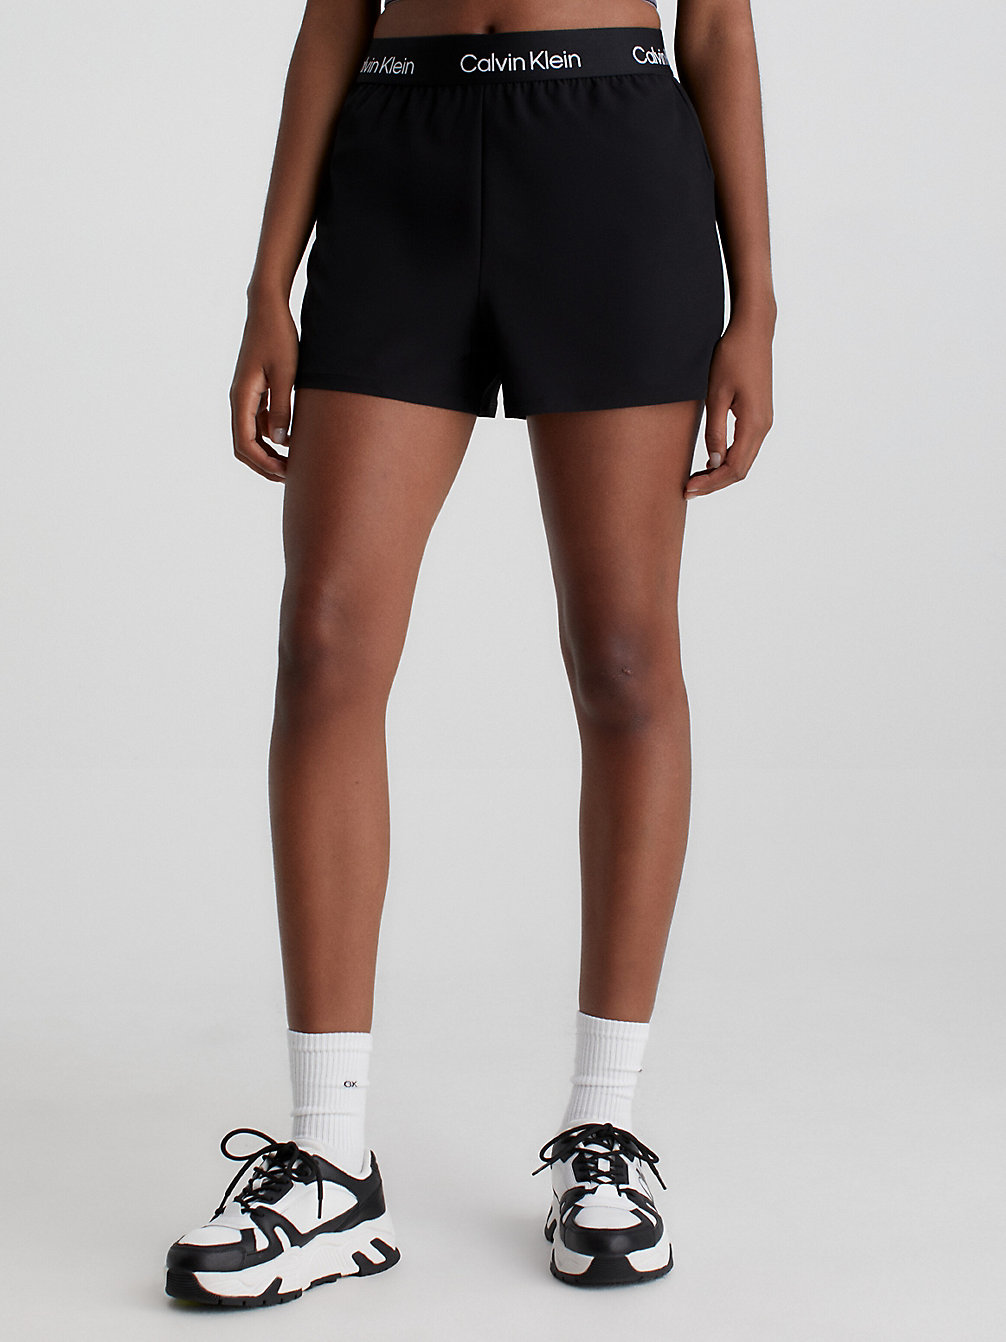 BLACK BEAUTY Gym Shorts undefined women Calvin Klein